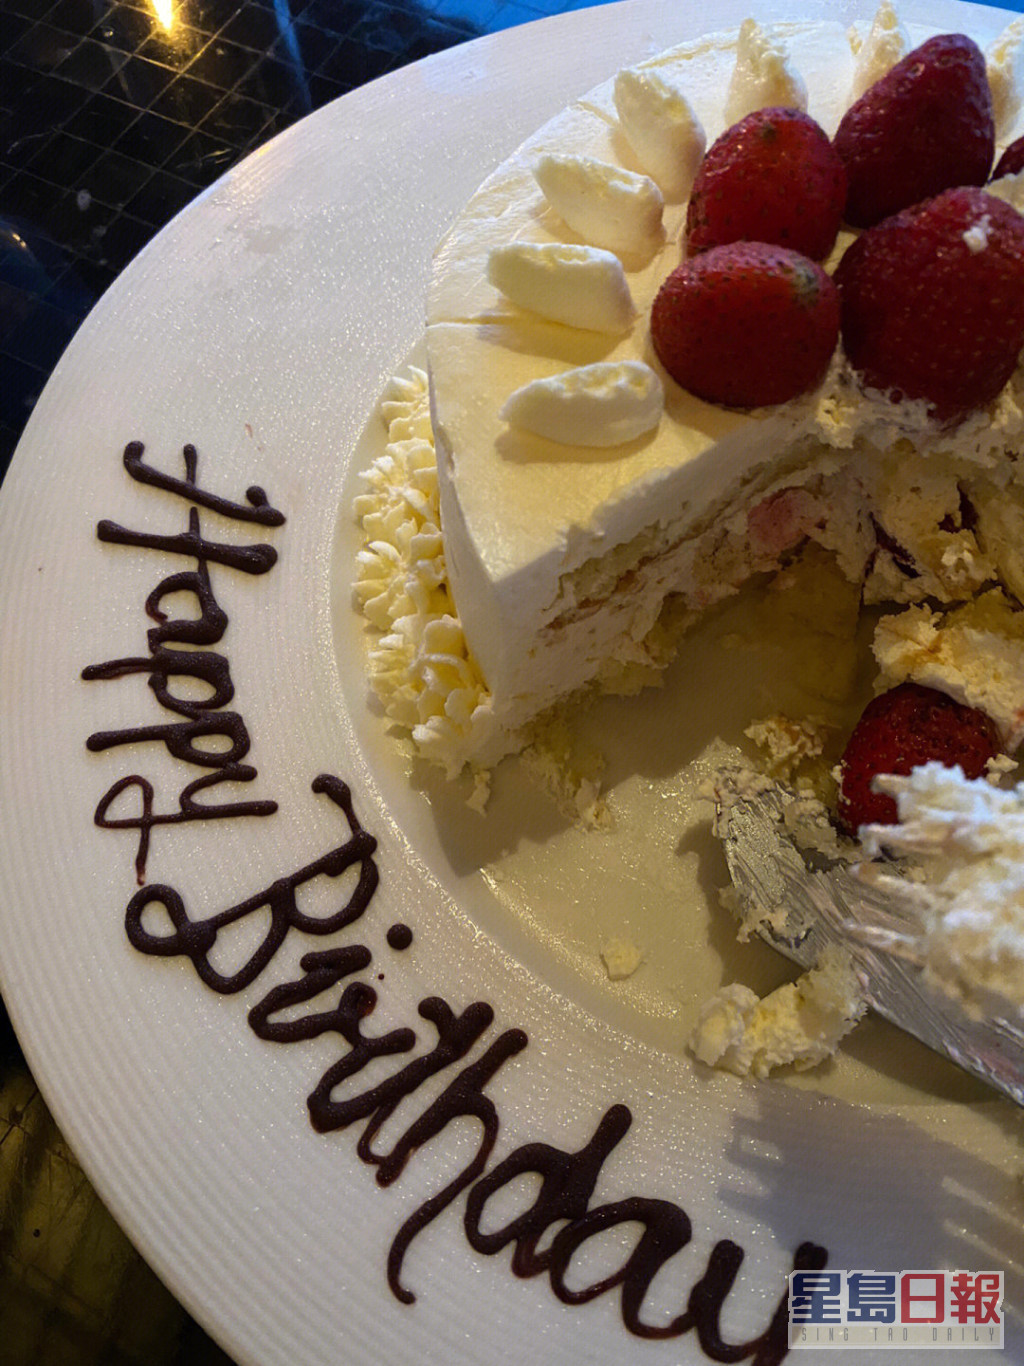 当然有生日蛋糕。